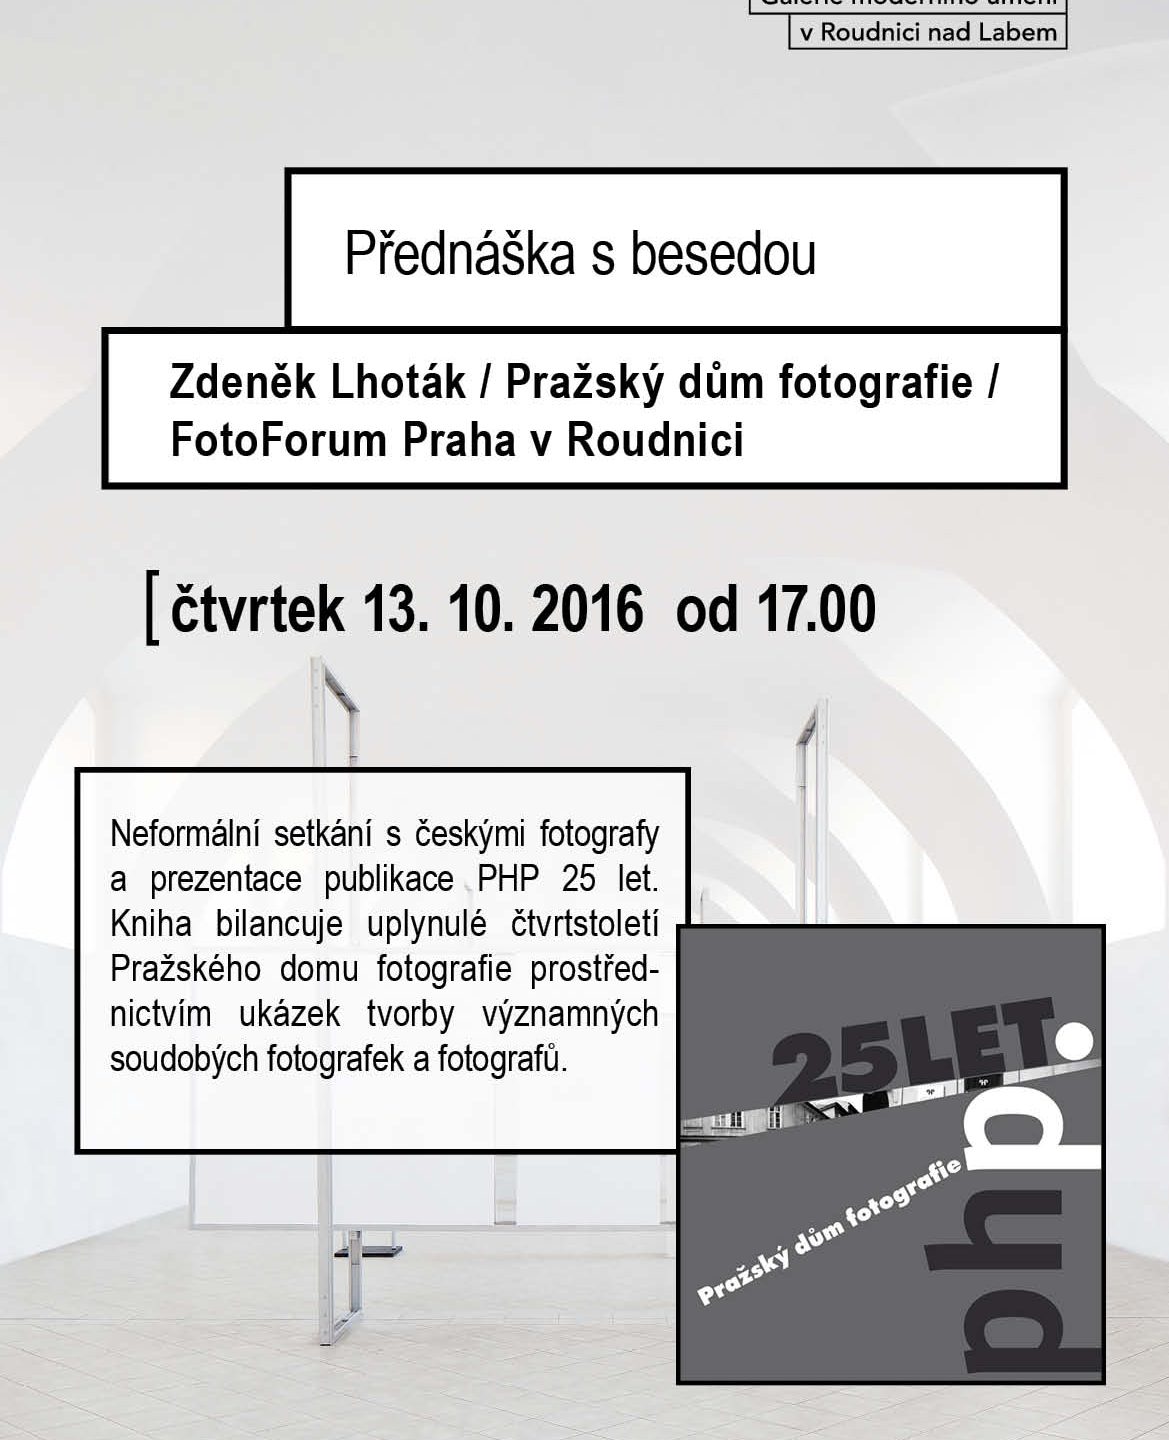 Zdeněk Lhoták / Pražský dům fotografie / FotoForum Praha v Roudnici